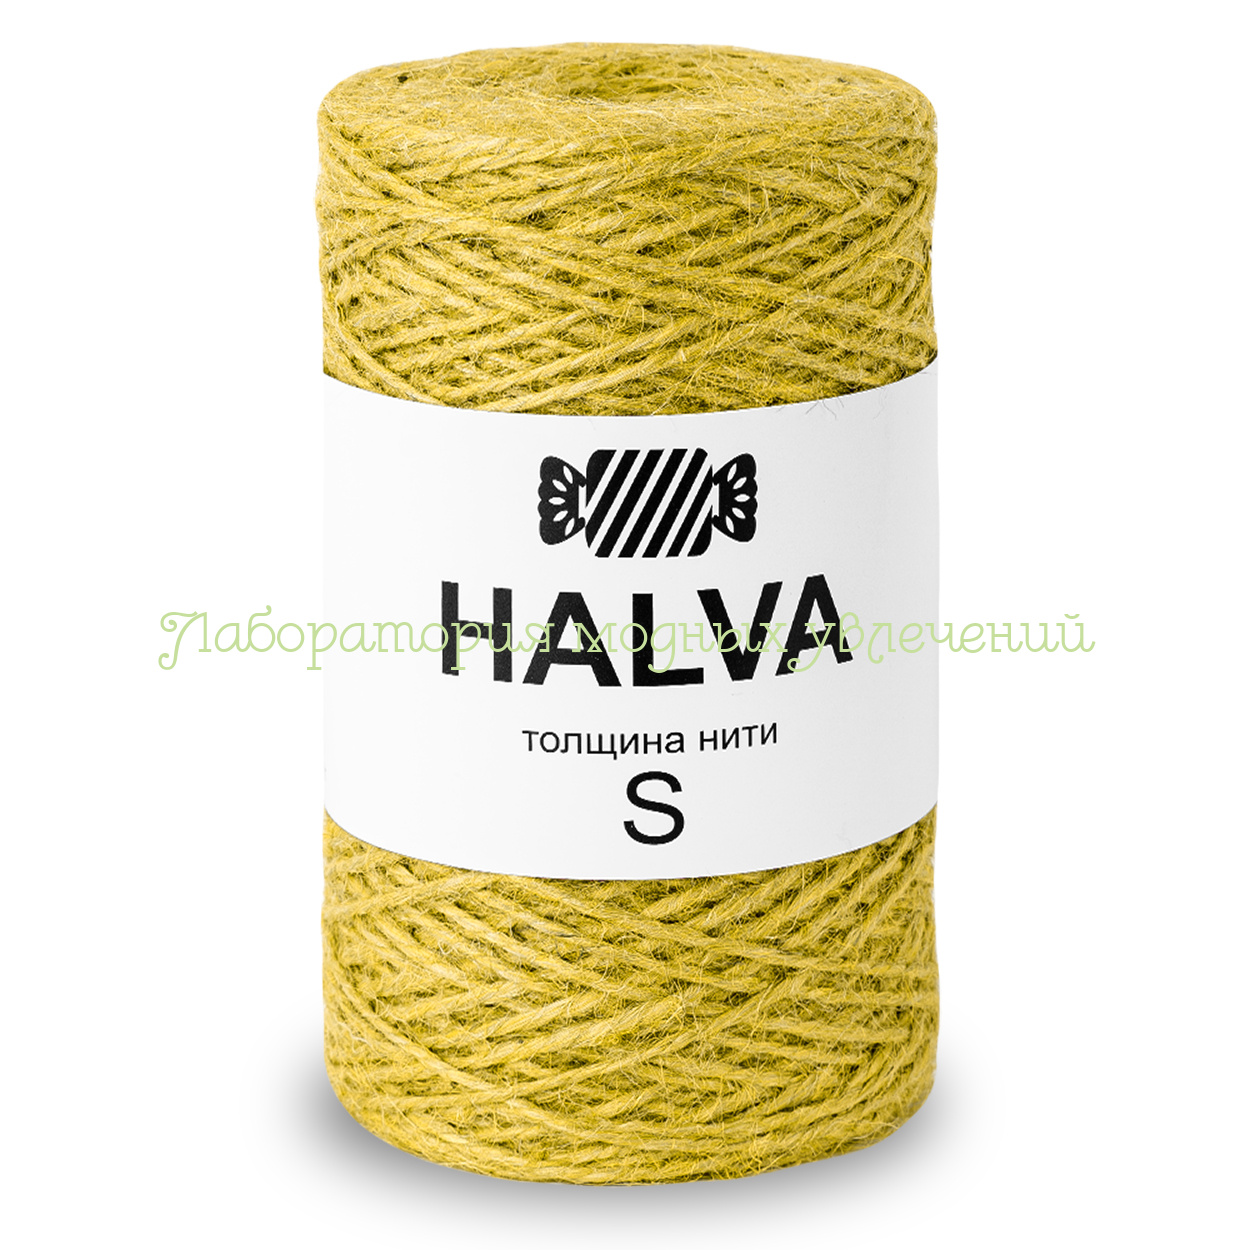 Пряжа Halva, 100% джутовое волокно, 220г/200м, толщина S, лимонад